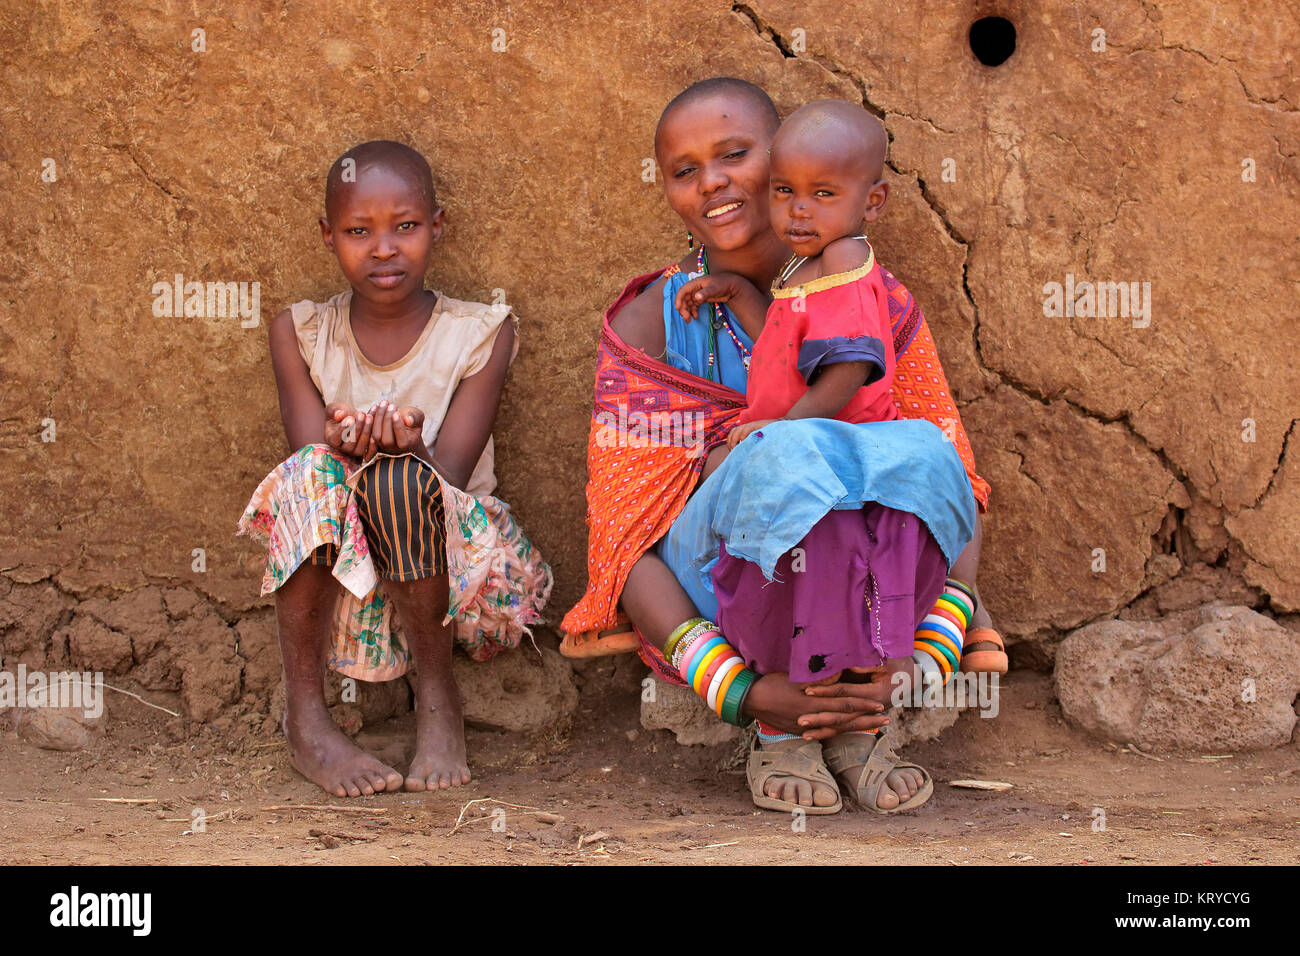 AMBOSELI, KENYA - 31 août 2013 : femme Masai non identifiés et ses enfants avec des décorations traditionnelles et colorées de vêtements rouges dans un village rural Banque D'Images